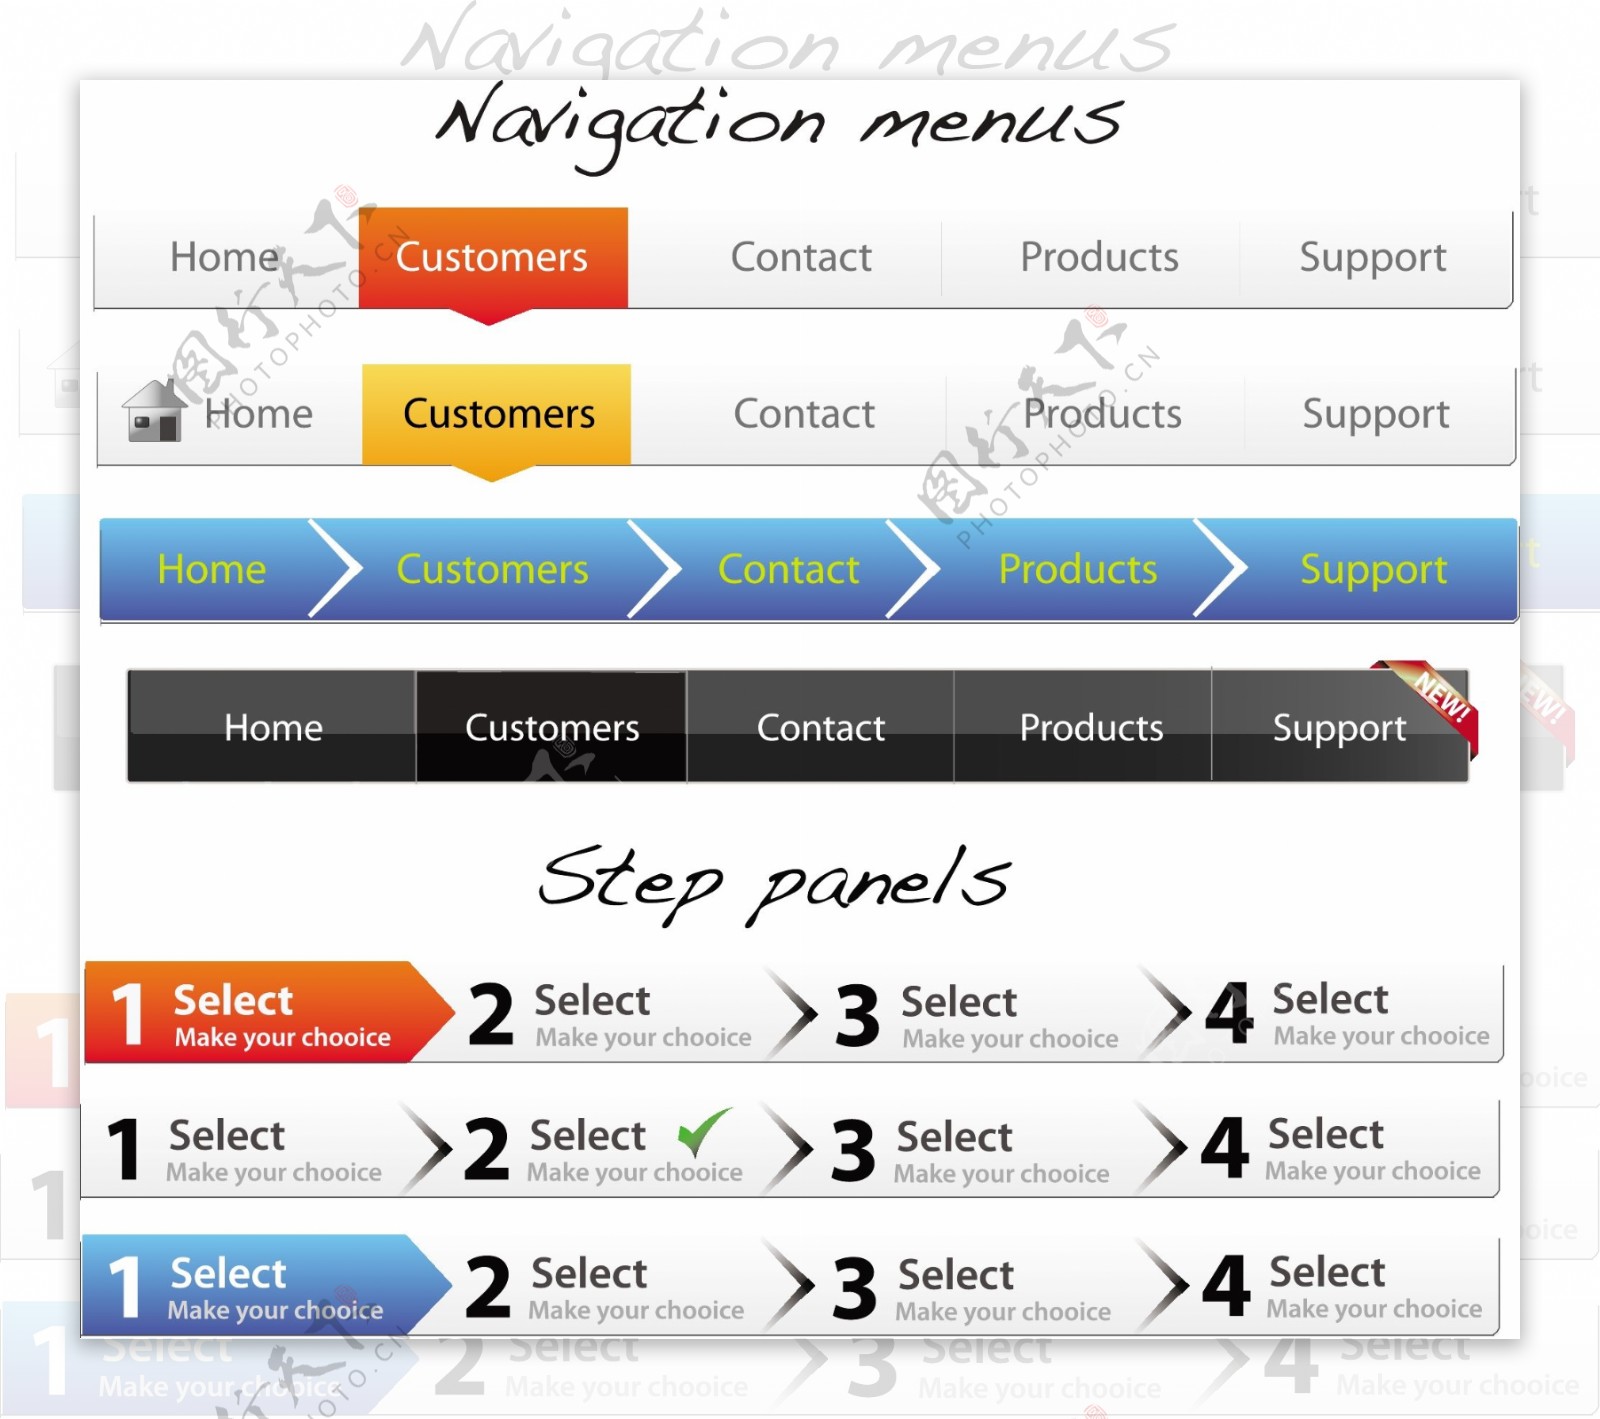 7种不同的导航菜单和步骤面板